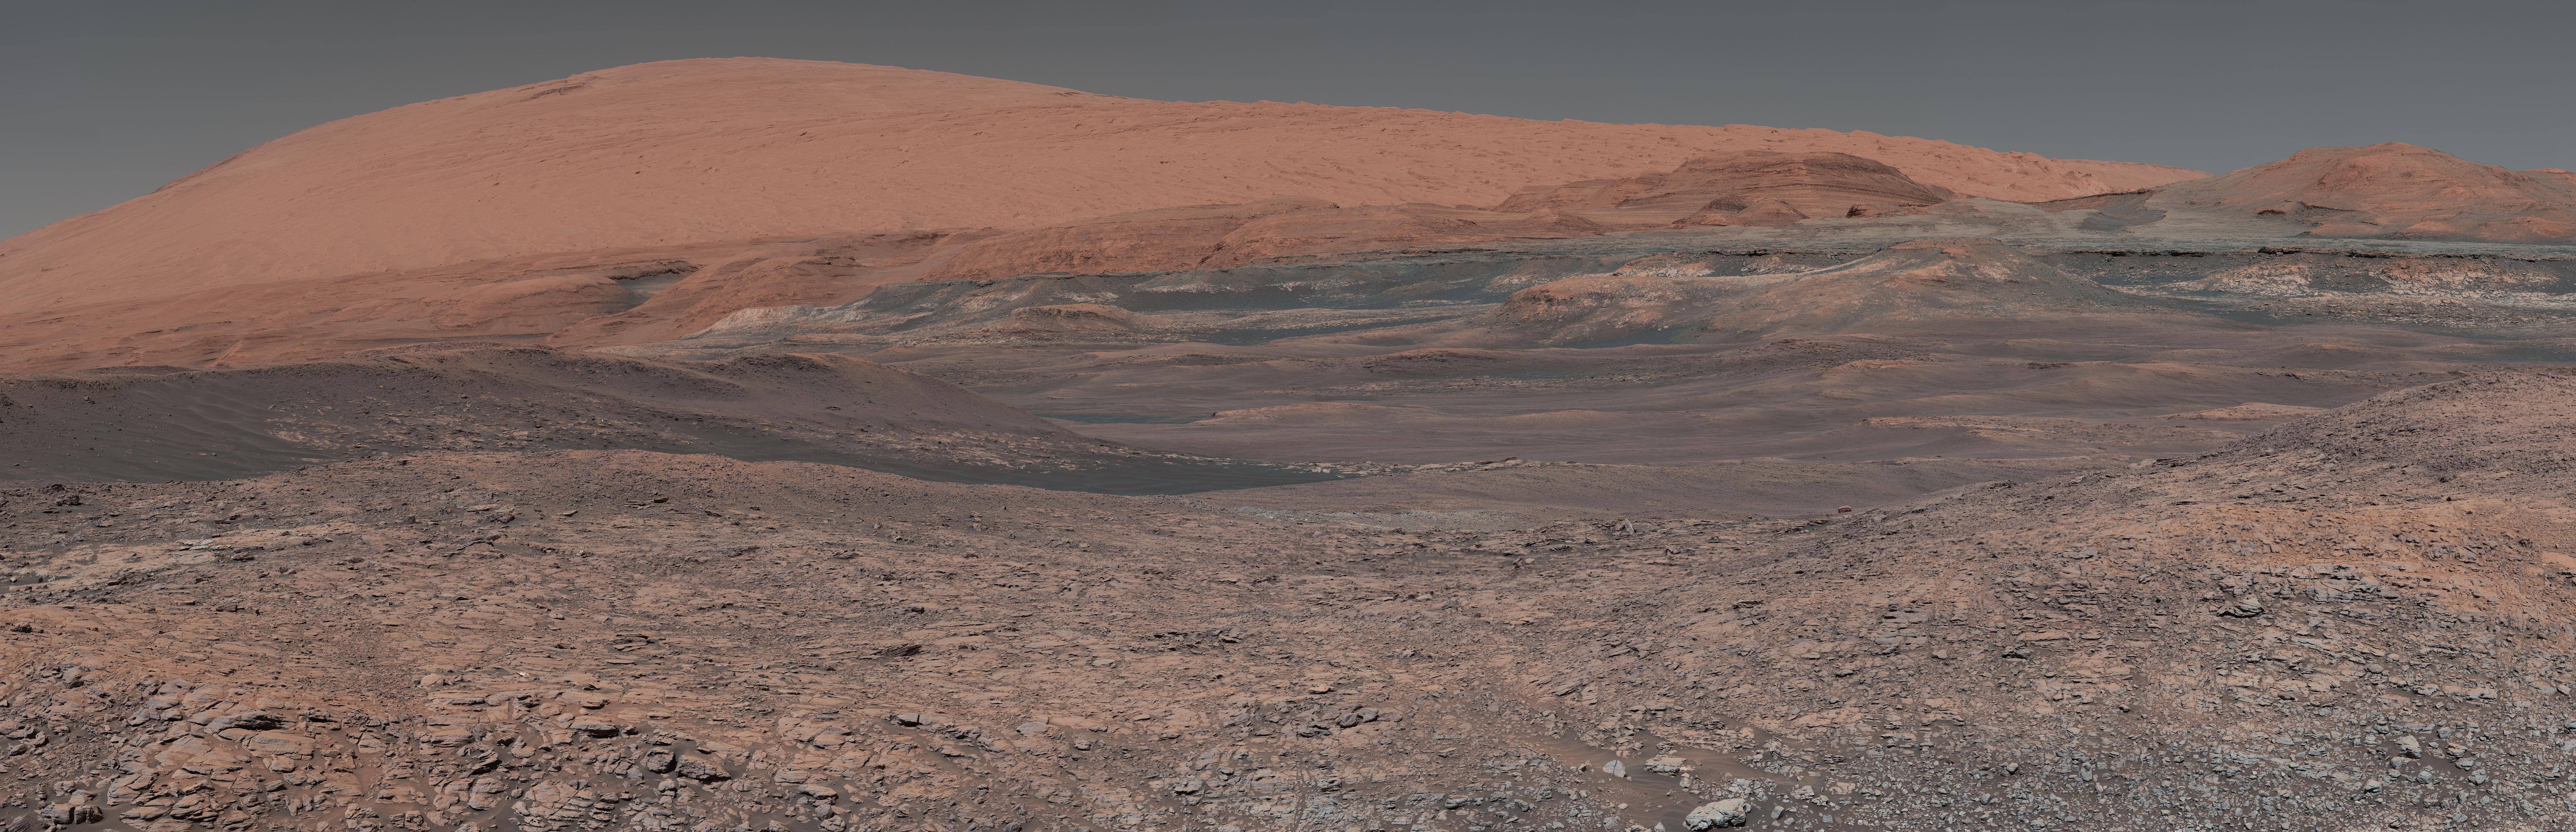 Image of Mars shot by NASA